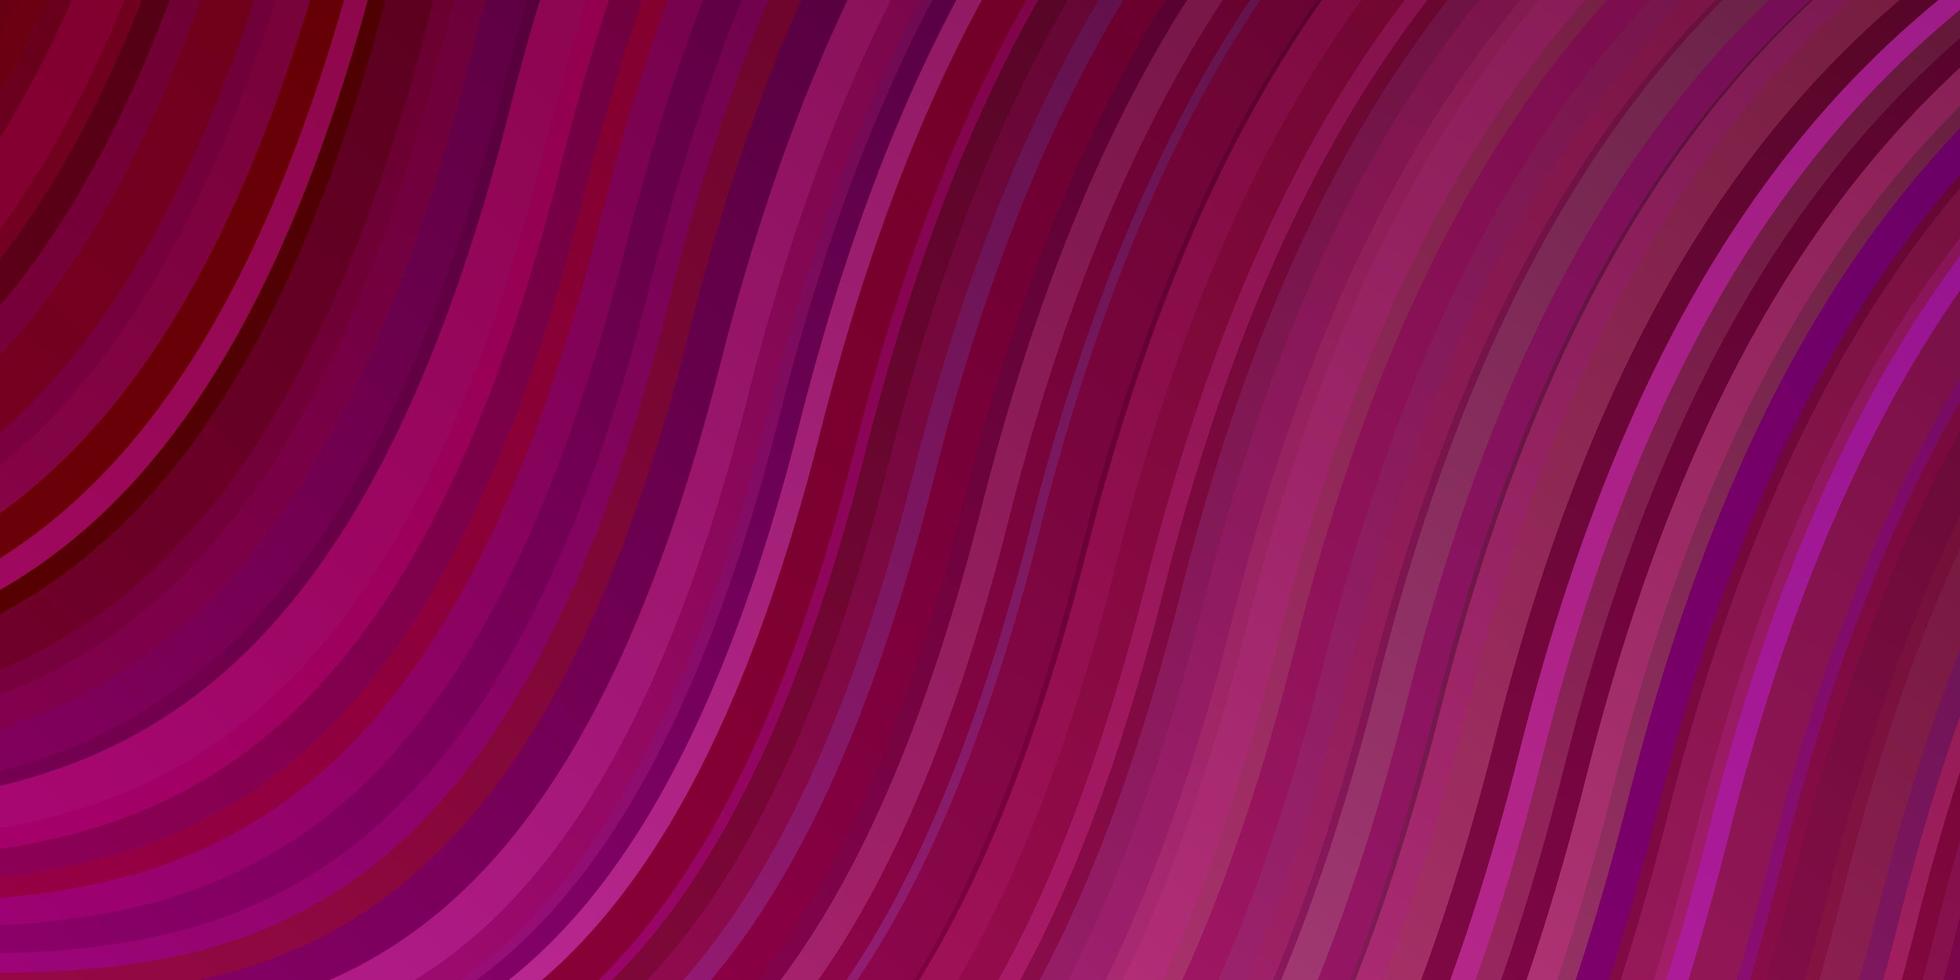 modèle vectoriel violet foncé, rose avec des courbes.